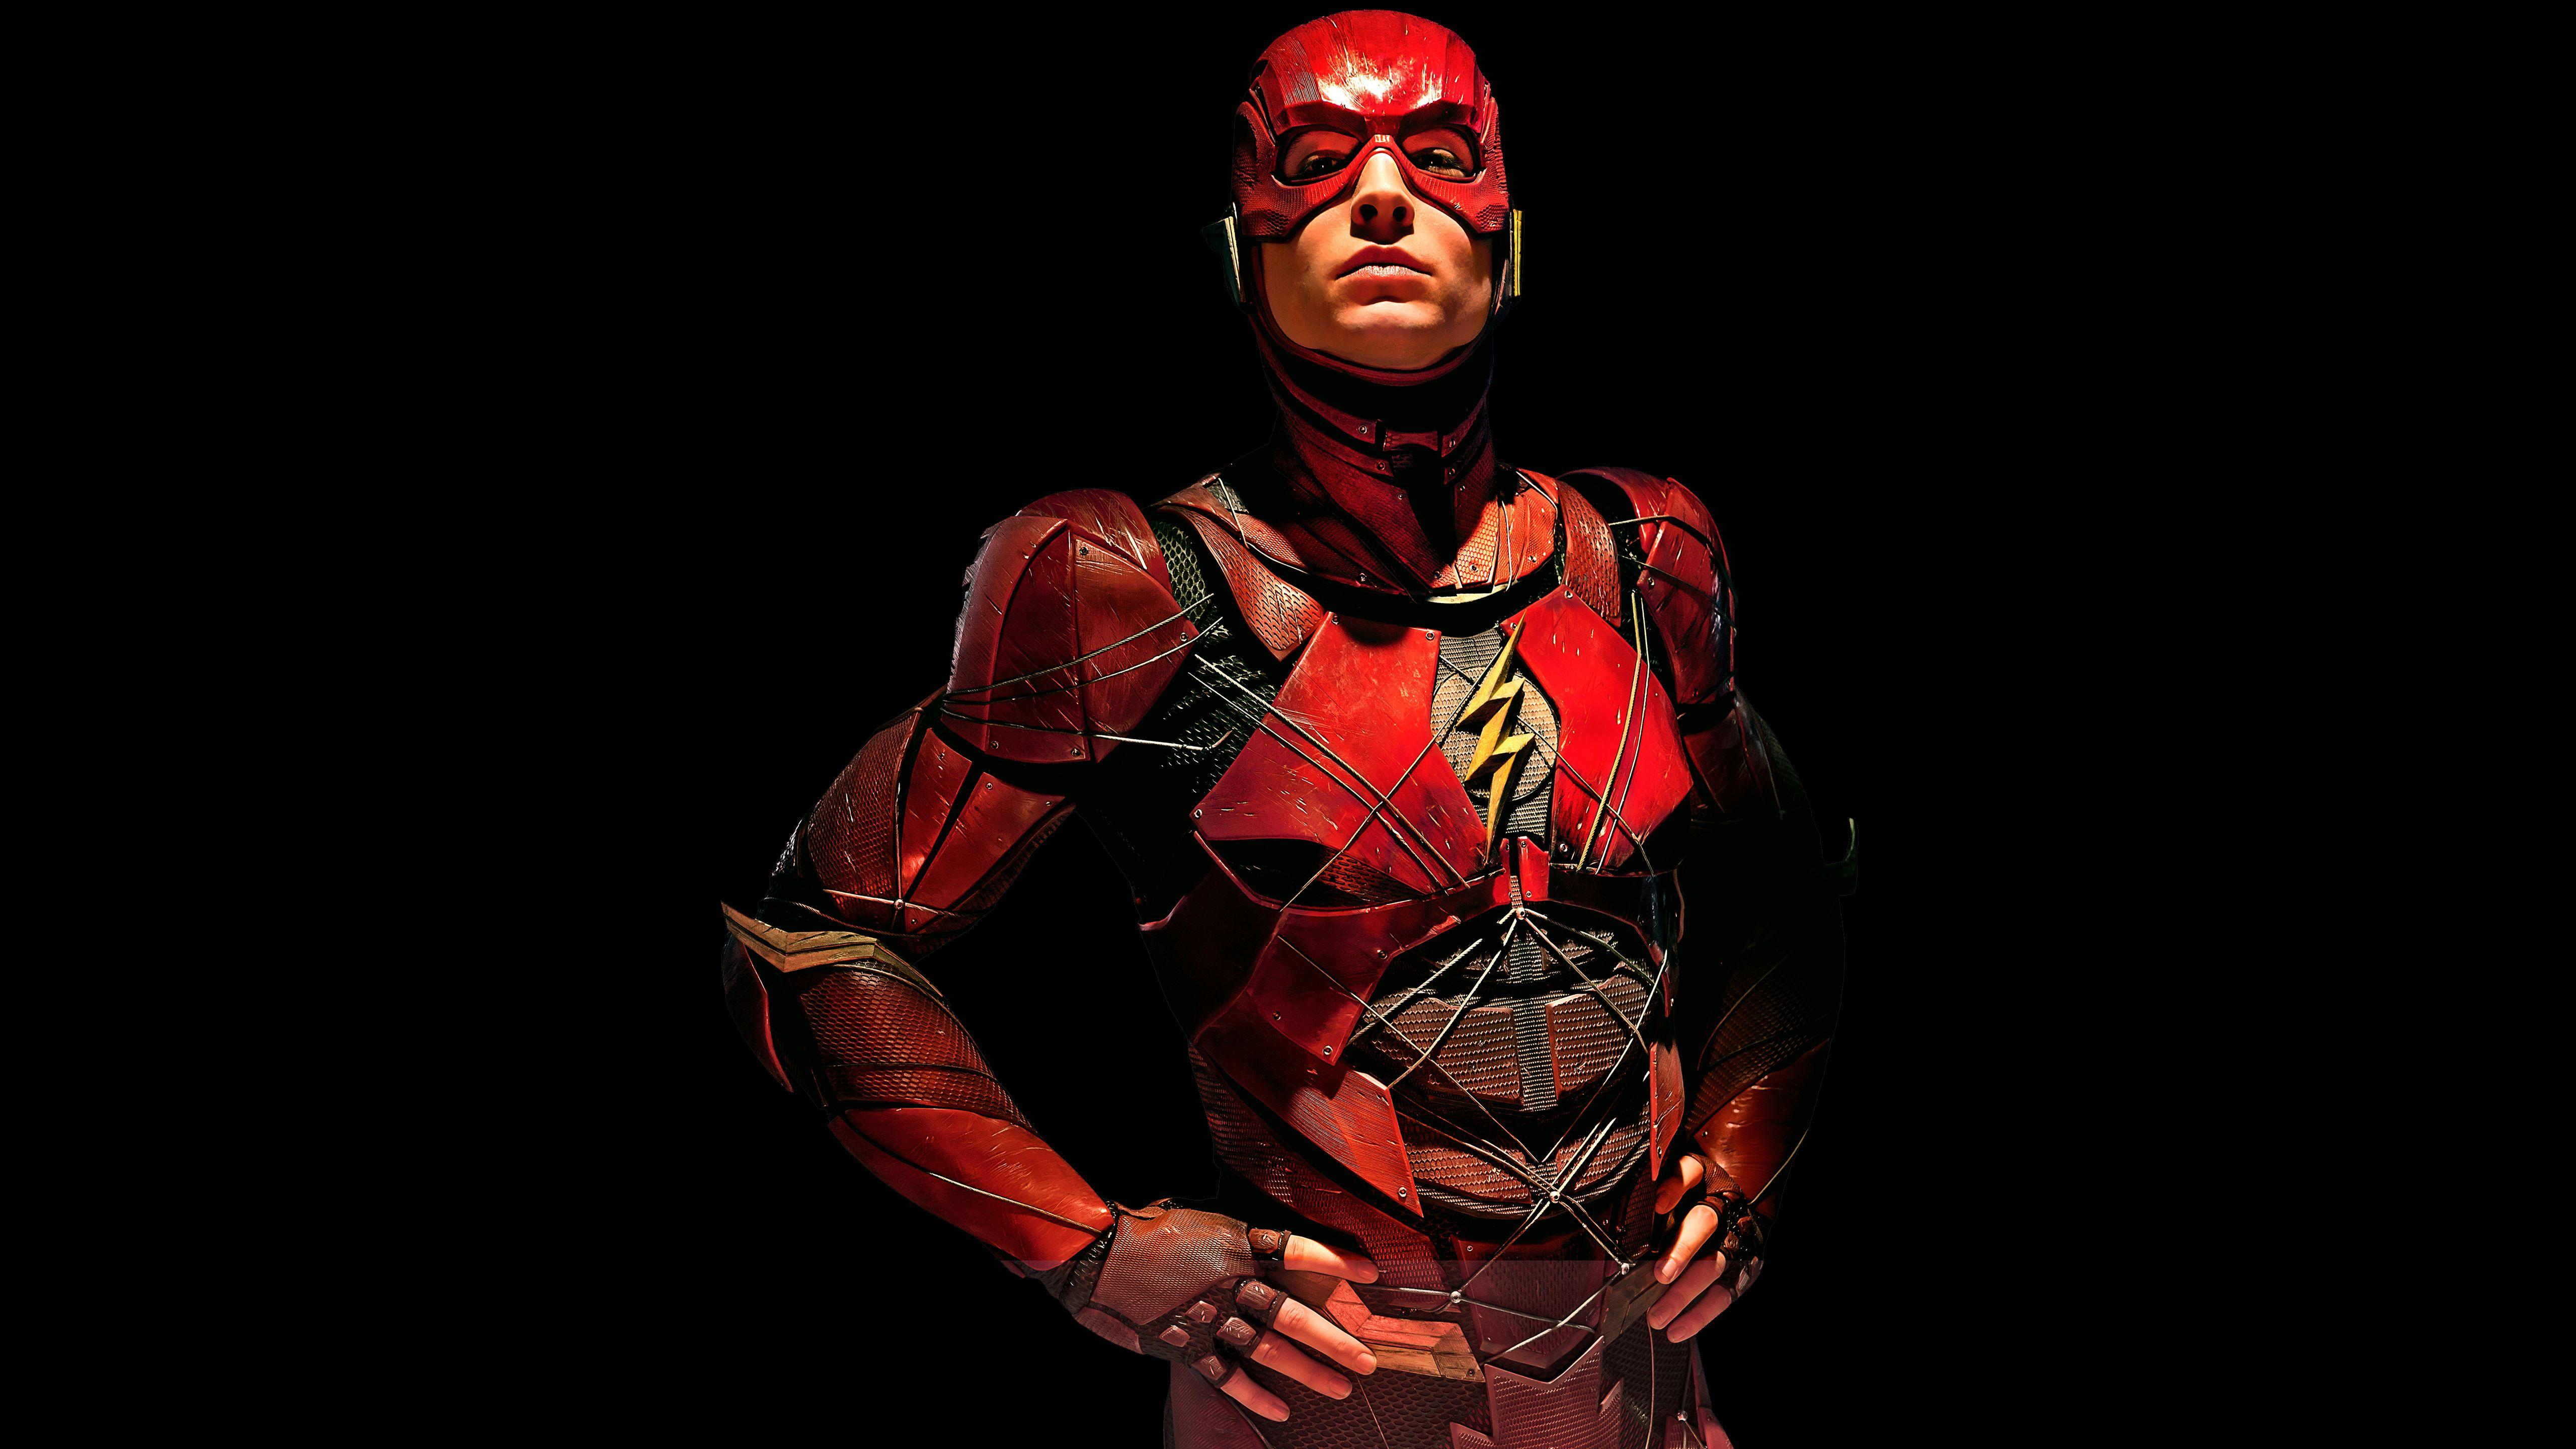 5120x2880 Hình nền The Flash, Ezra Miller, Justice League, 2017, 4K, 8K